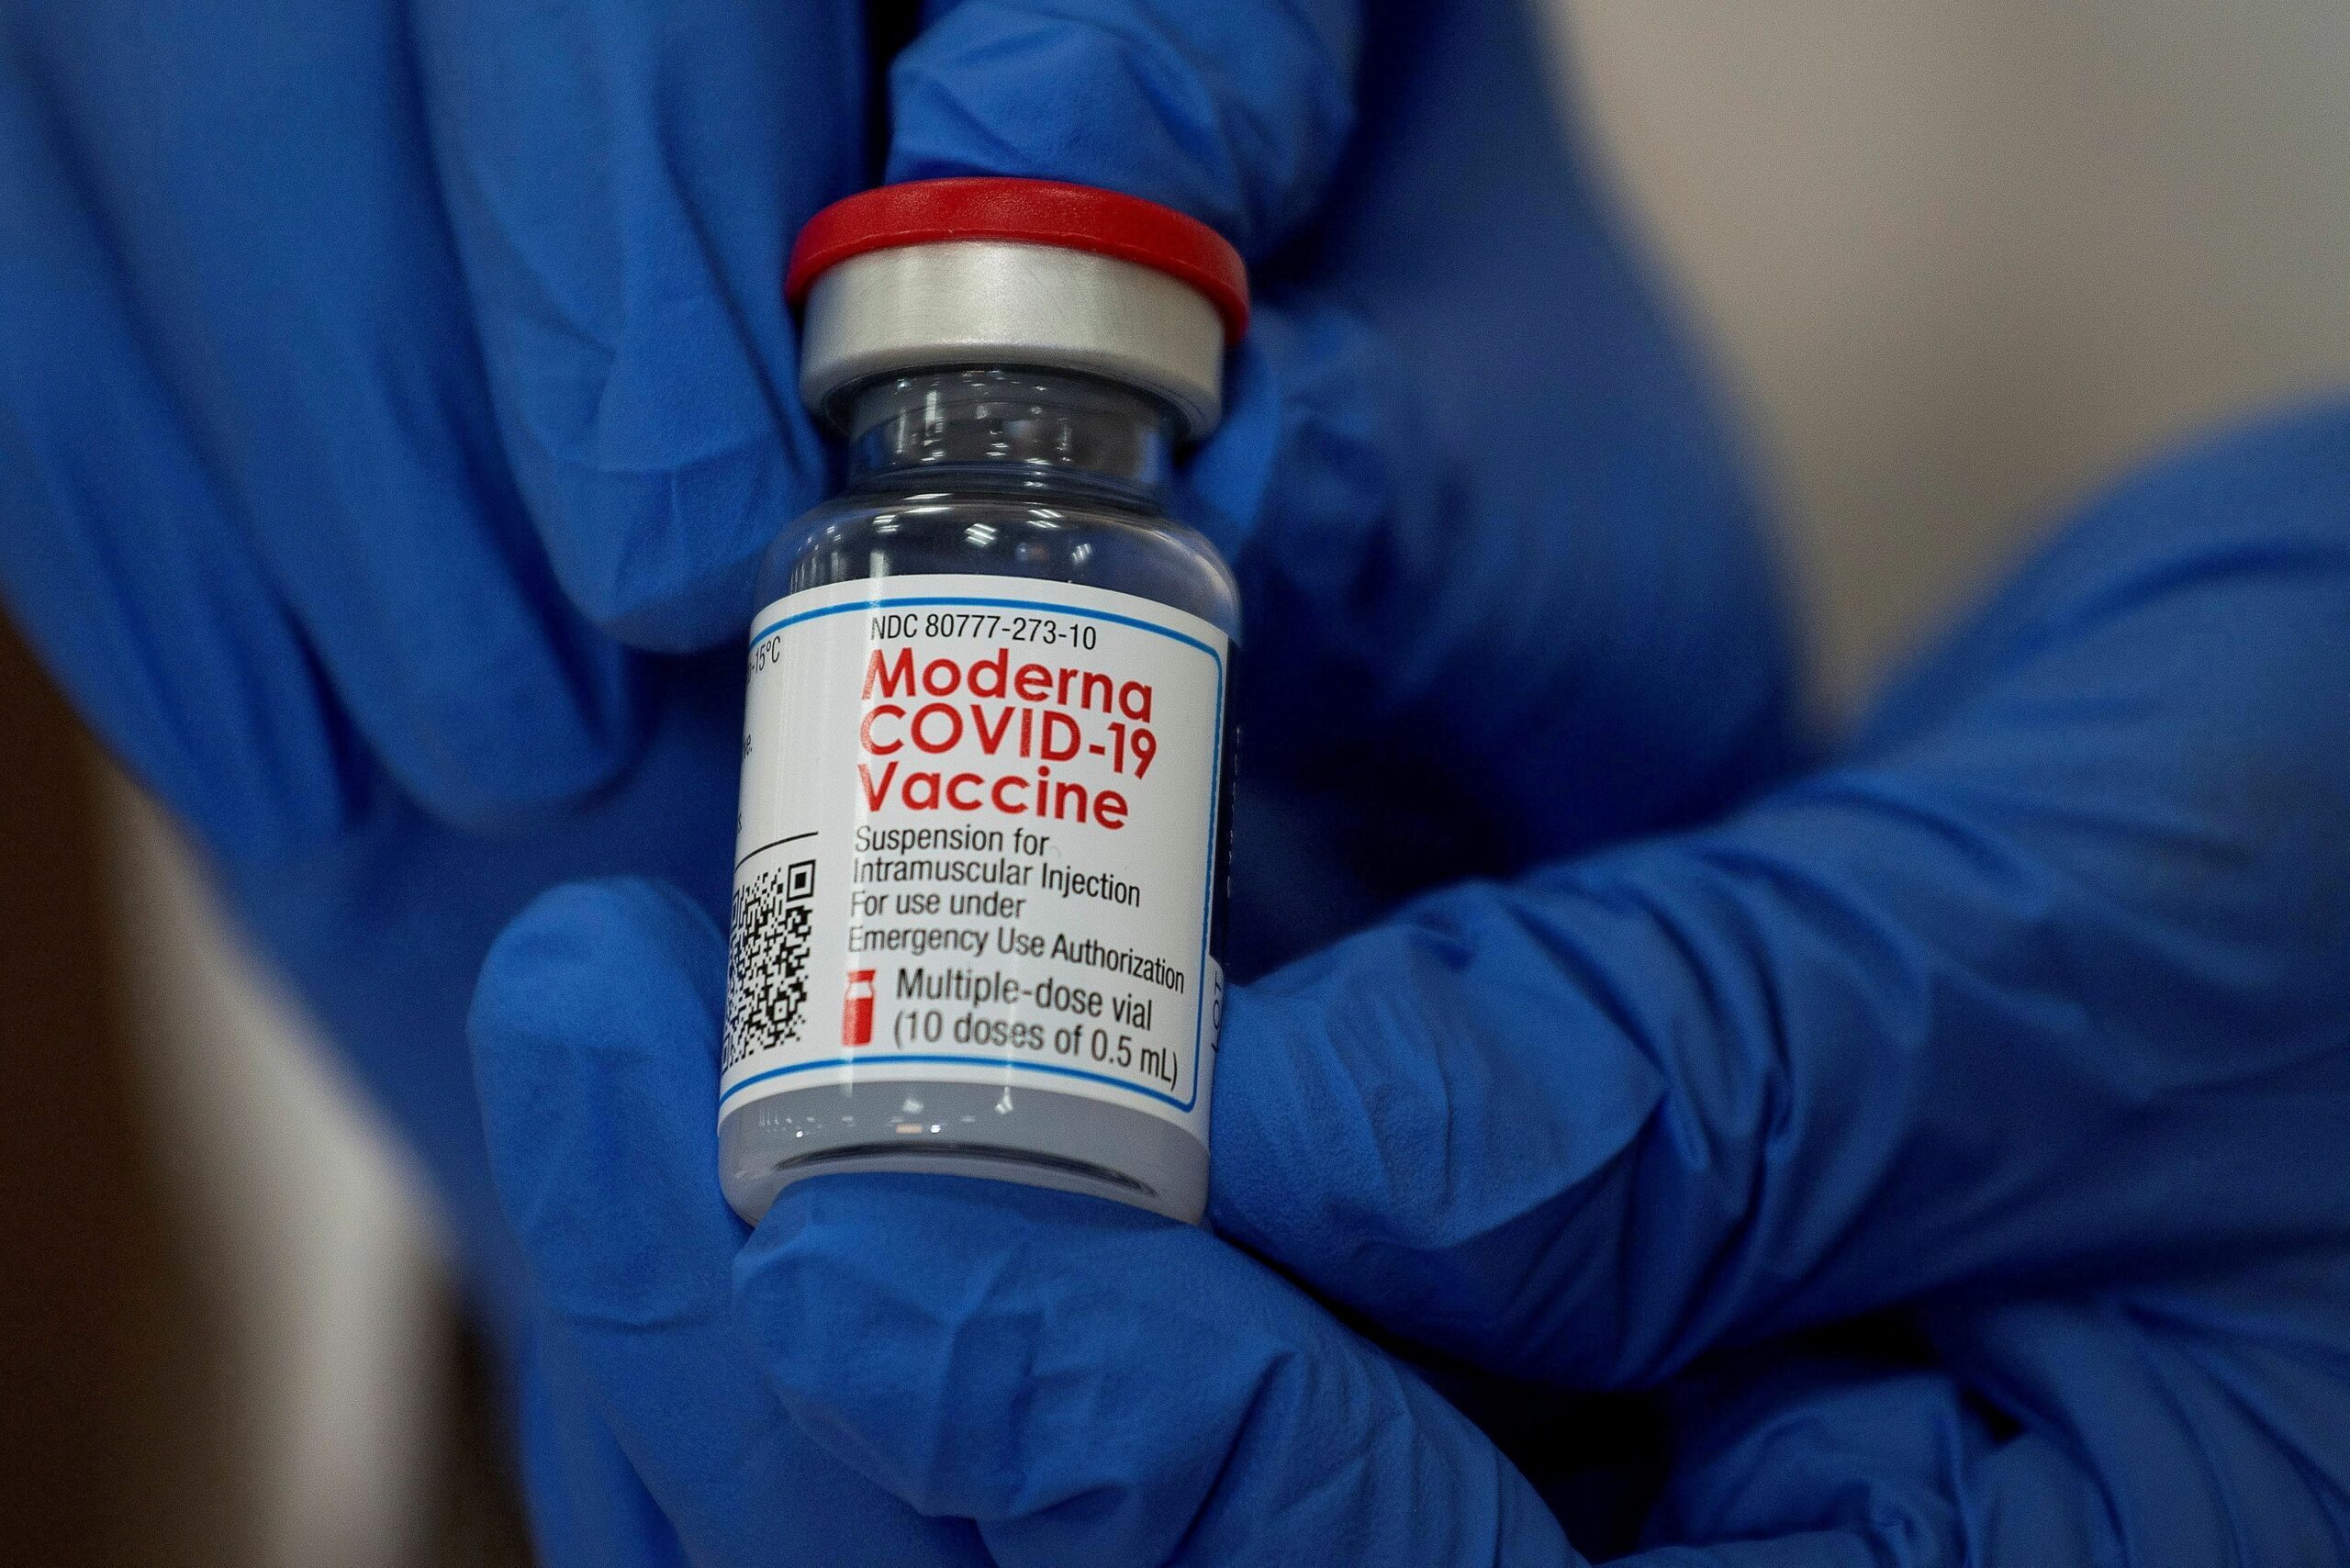 ญี่ปุ่น ระงับฉีดวัคซีนโมเดอร์นา 1.63 ล้านโดส หลังพบสารปนเปื้อน – ต่างประเทศ